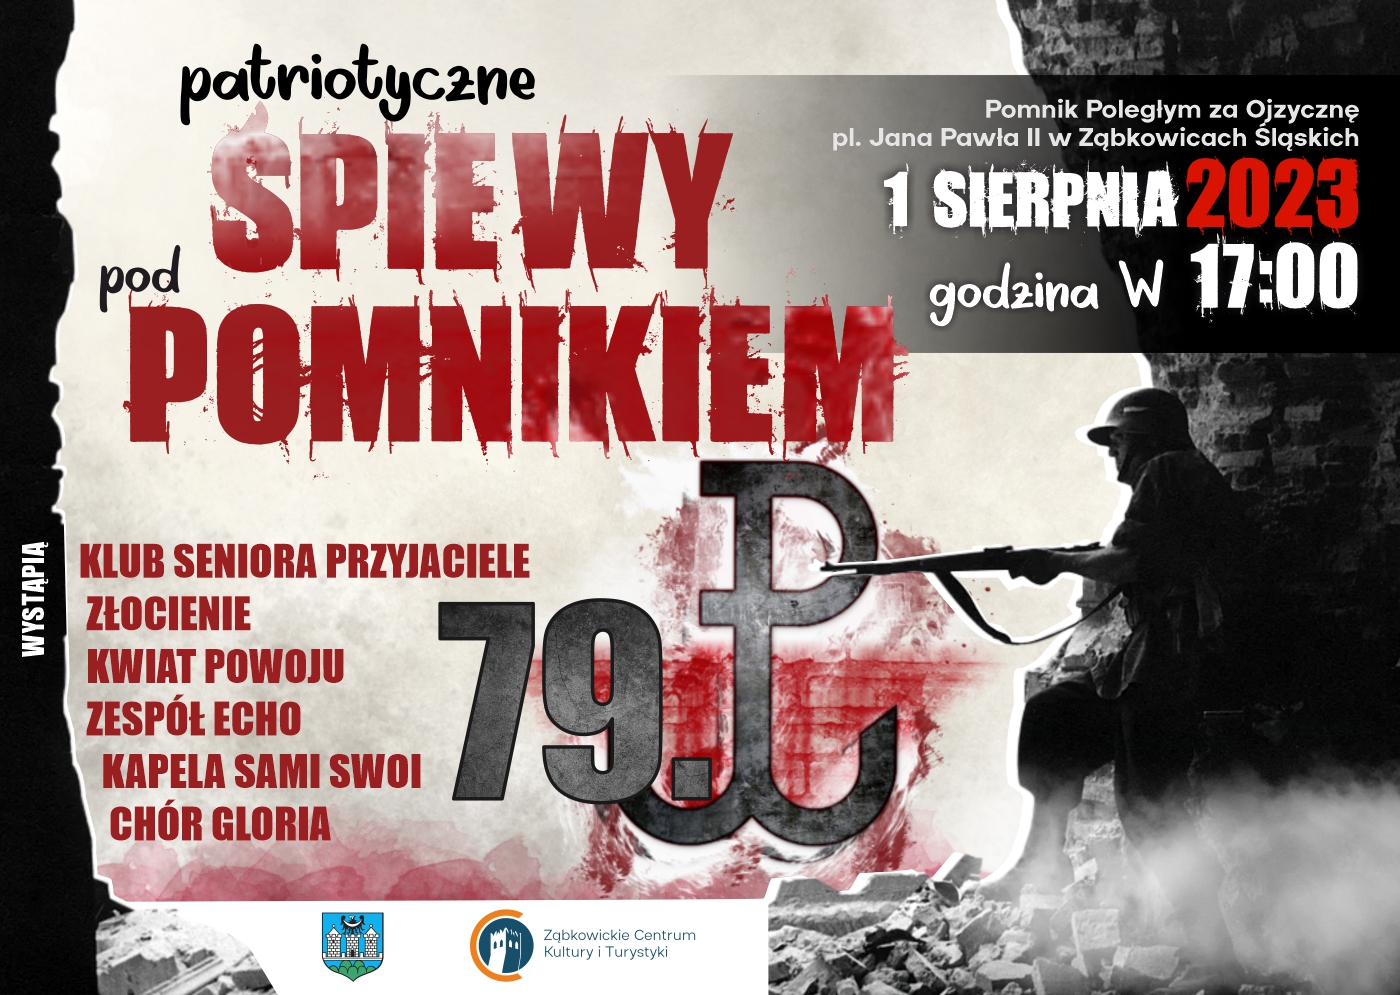 Plakat informujący o wydarzeniu "Patriotyczne śpiewy pod pomnikiem" 1 sierpnia 2023 o godzinie 17:00 pod Pomnikiem Poległym za Ojczyznę w Ząbkowicach Śląskich.